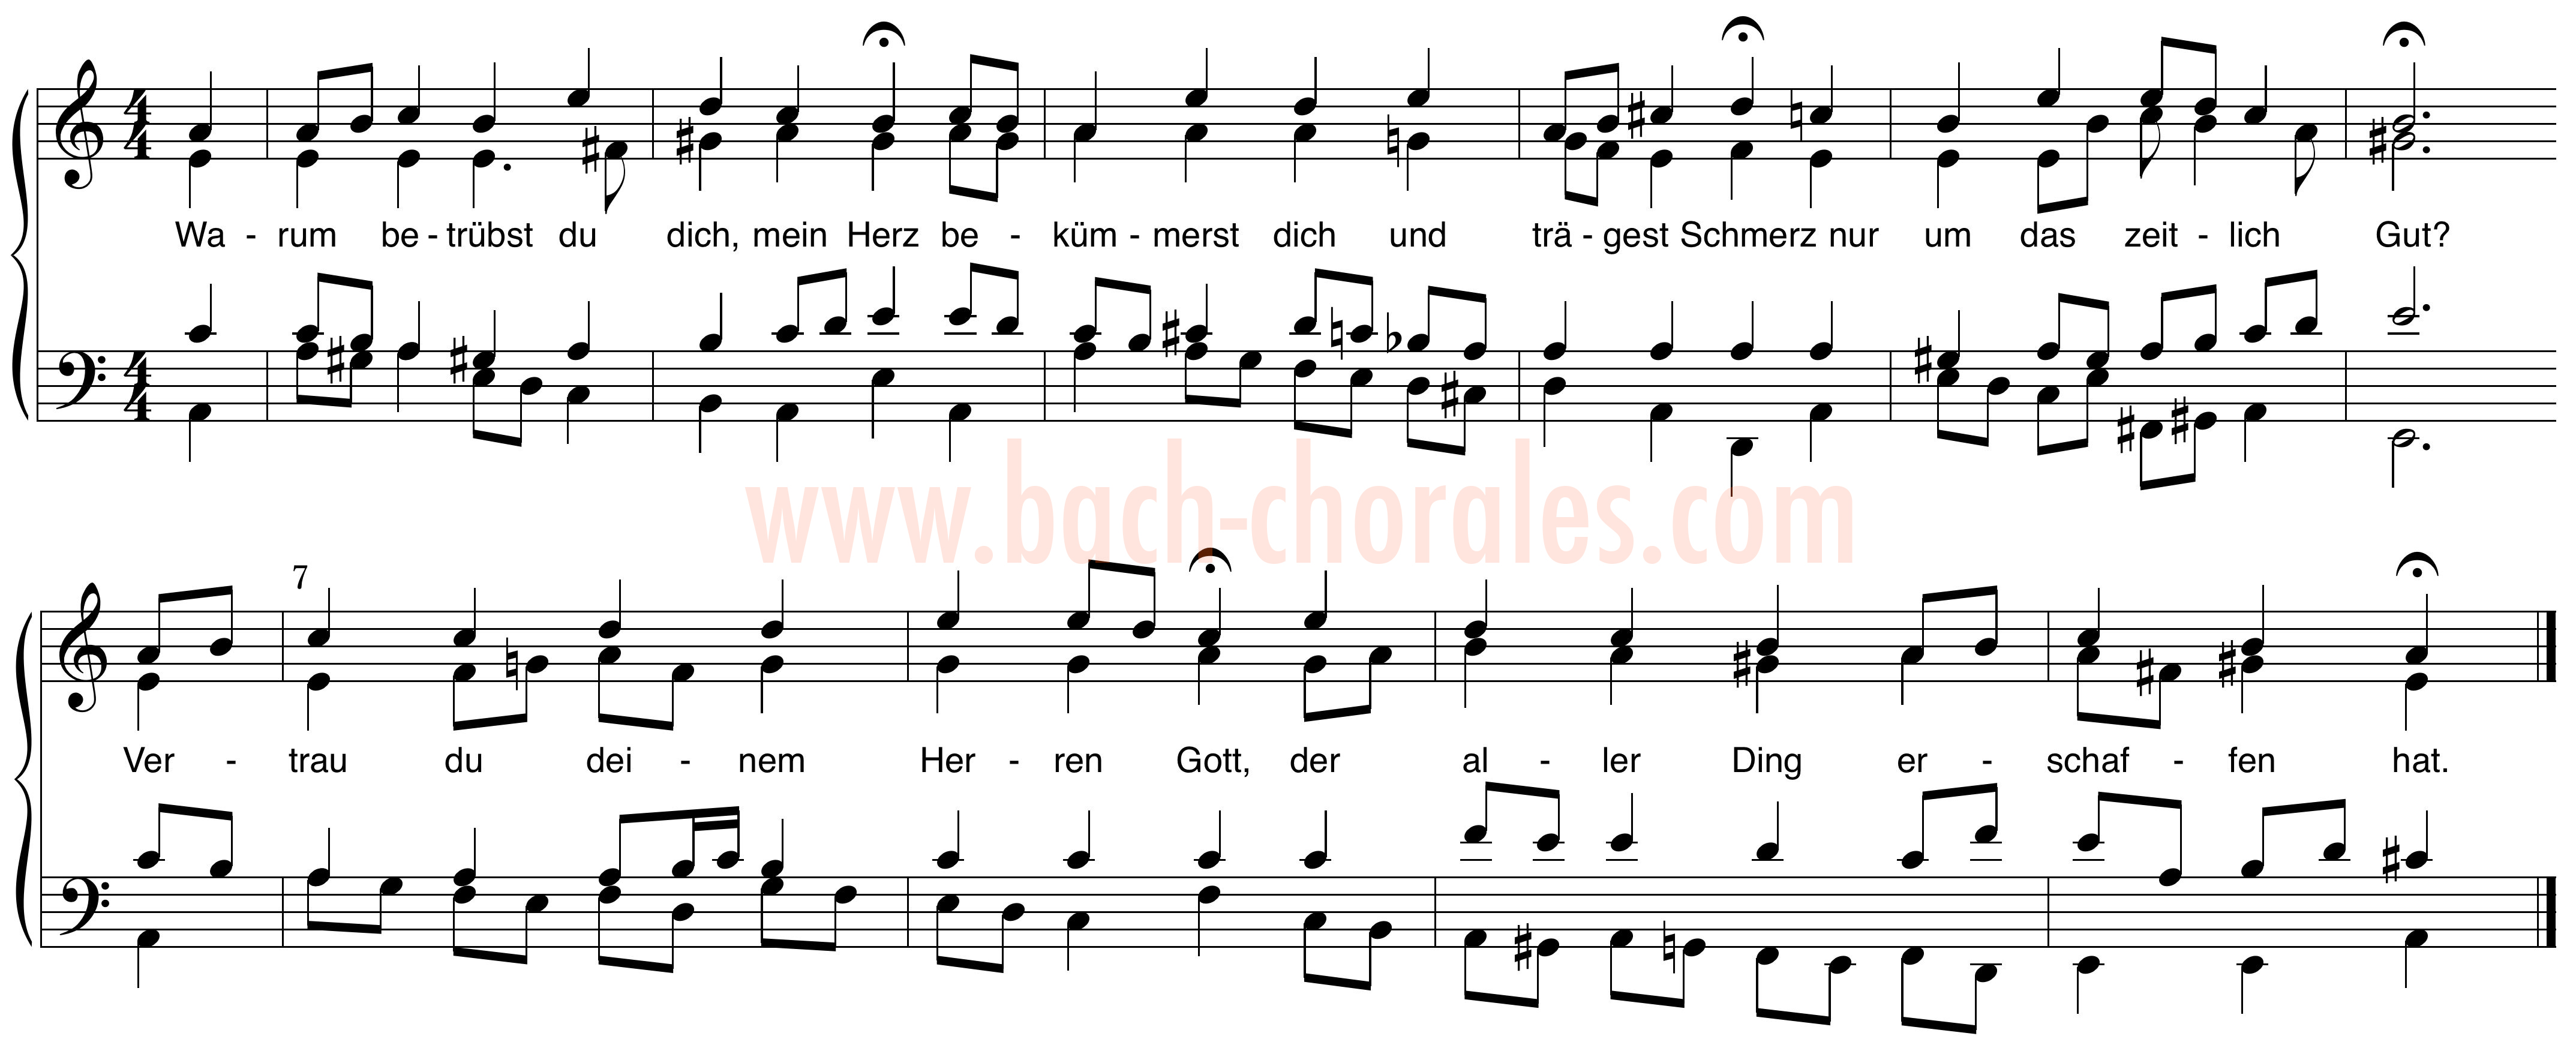 notenbeeld BWV 420 op https://www.bach-chorales.com/